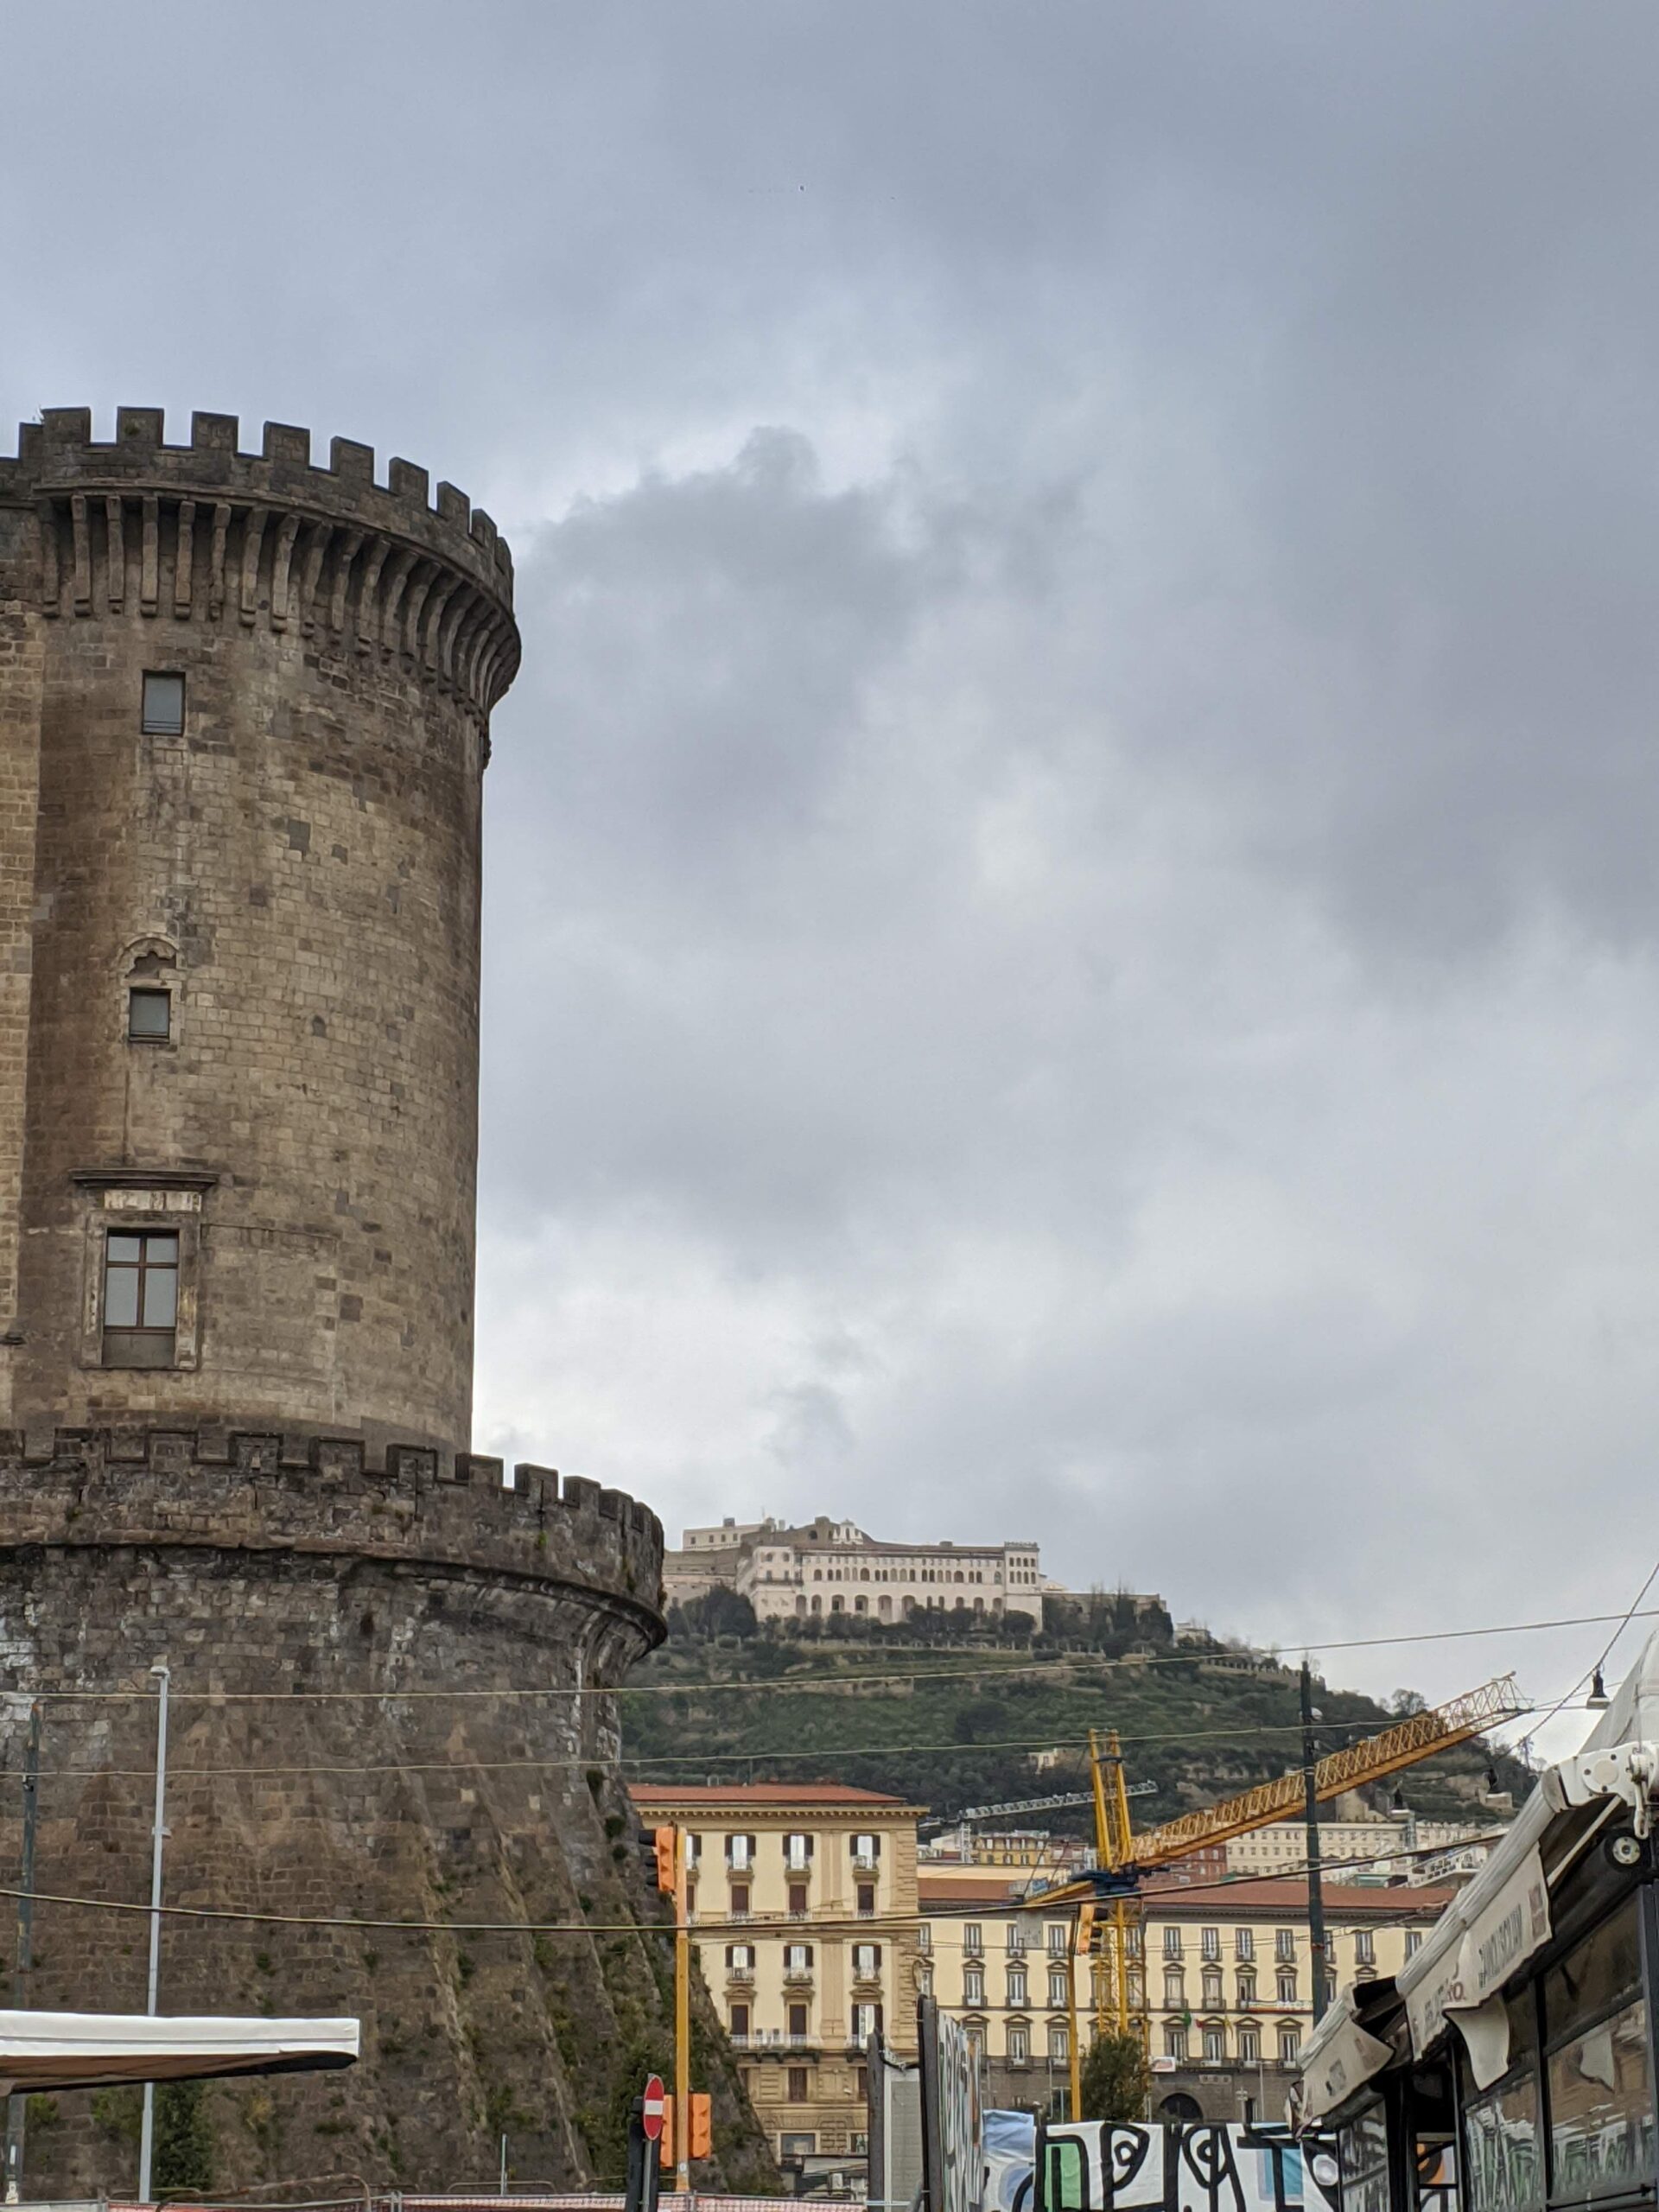 Foto da marulha de um castelo, em formato redondo e com o topo com pequenas aberturas na parede para observação. Ao fundo é possível ver uma montanha com outro castelo em seu topo.